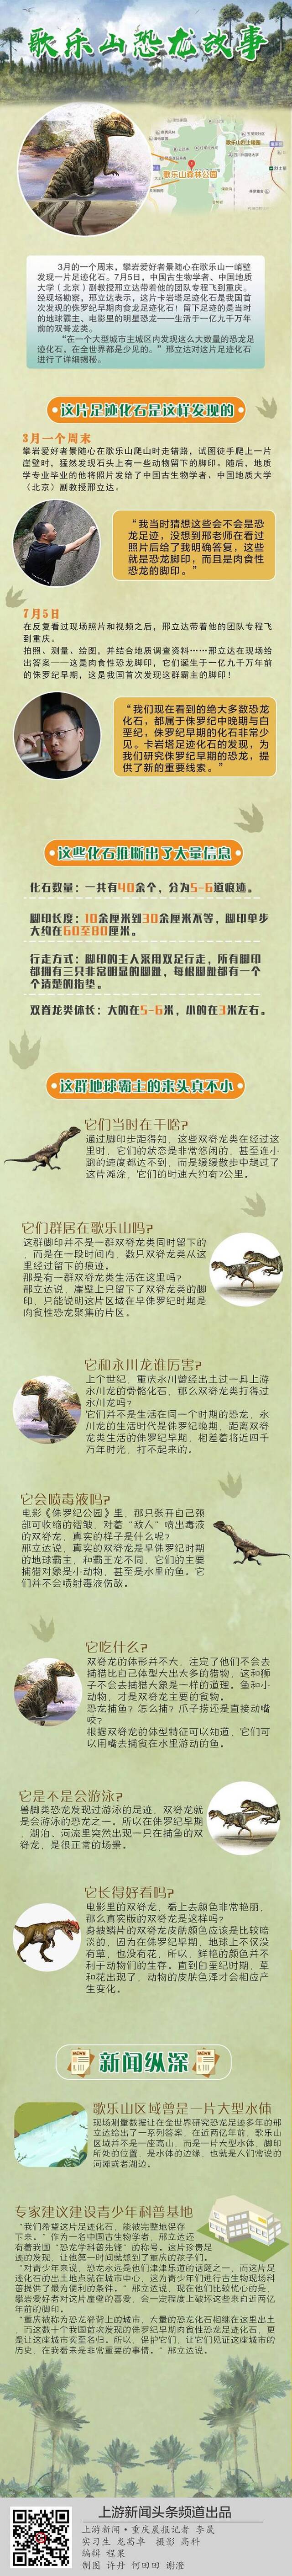 重庆歌乐山发现侏罗纪早期肉食恐龙足迹化石